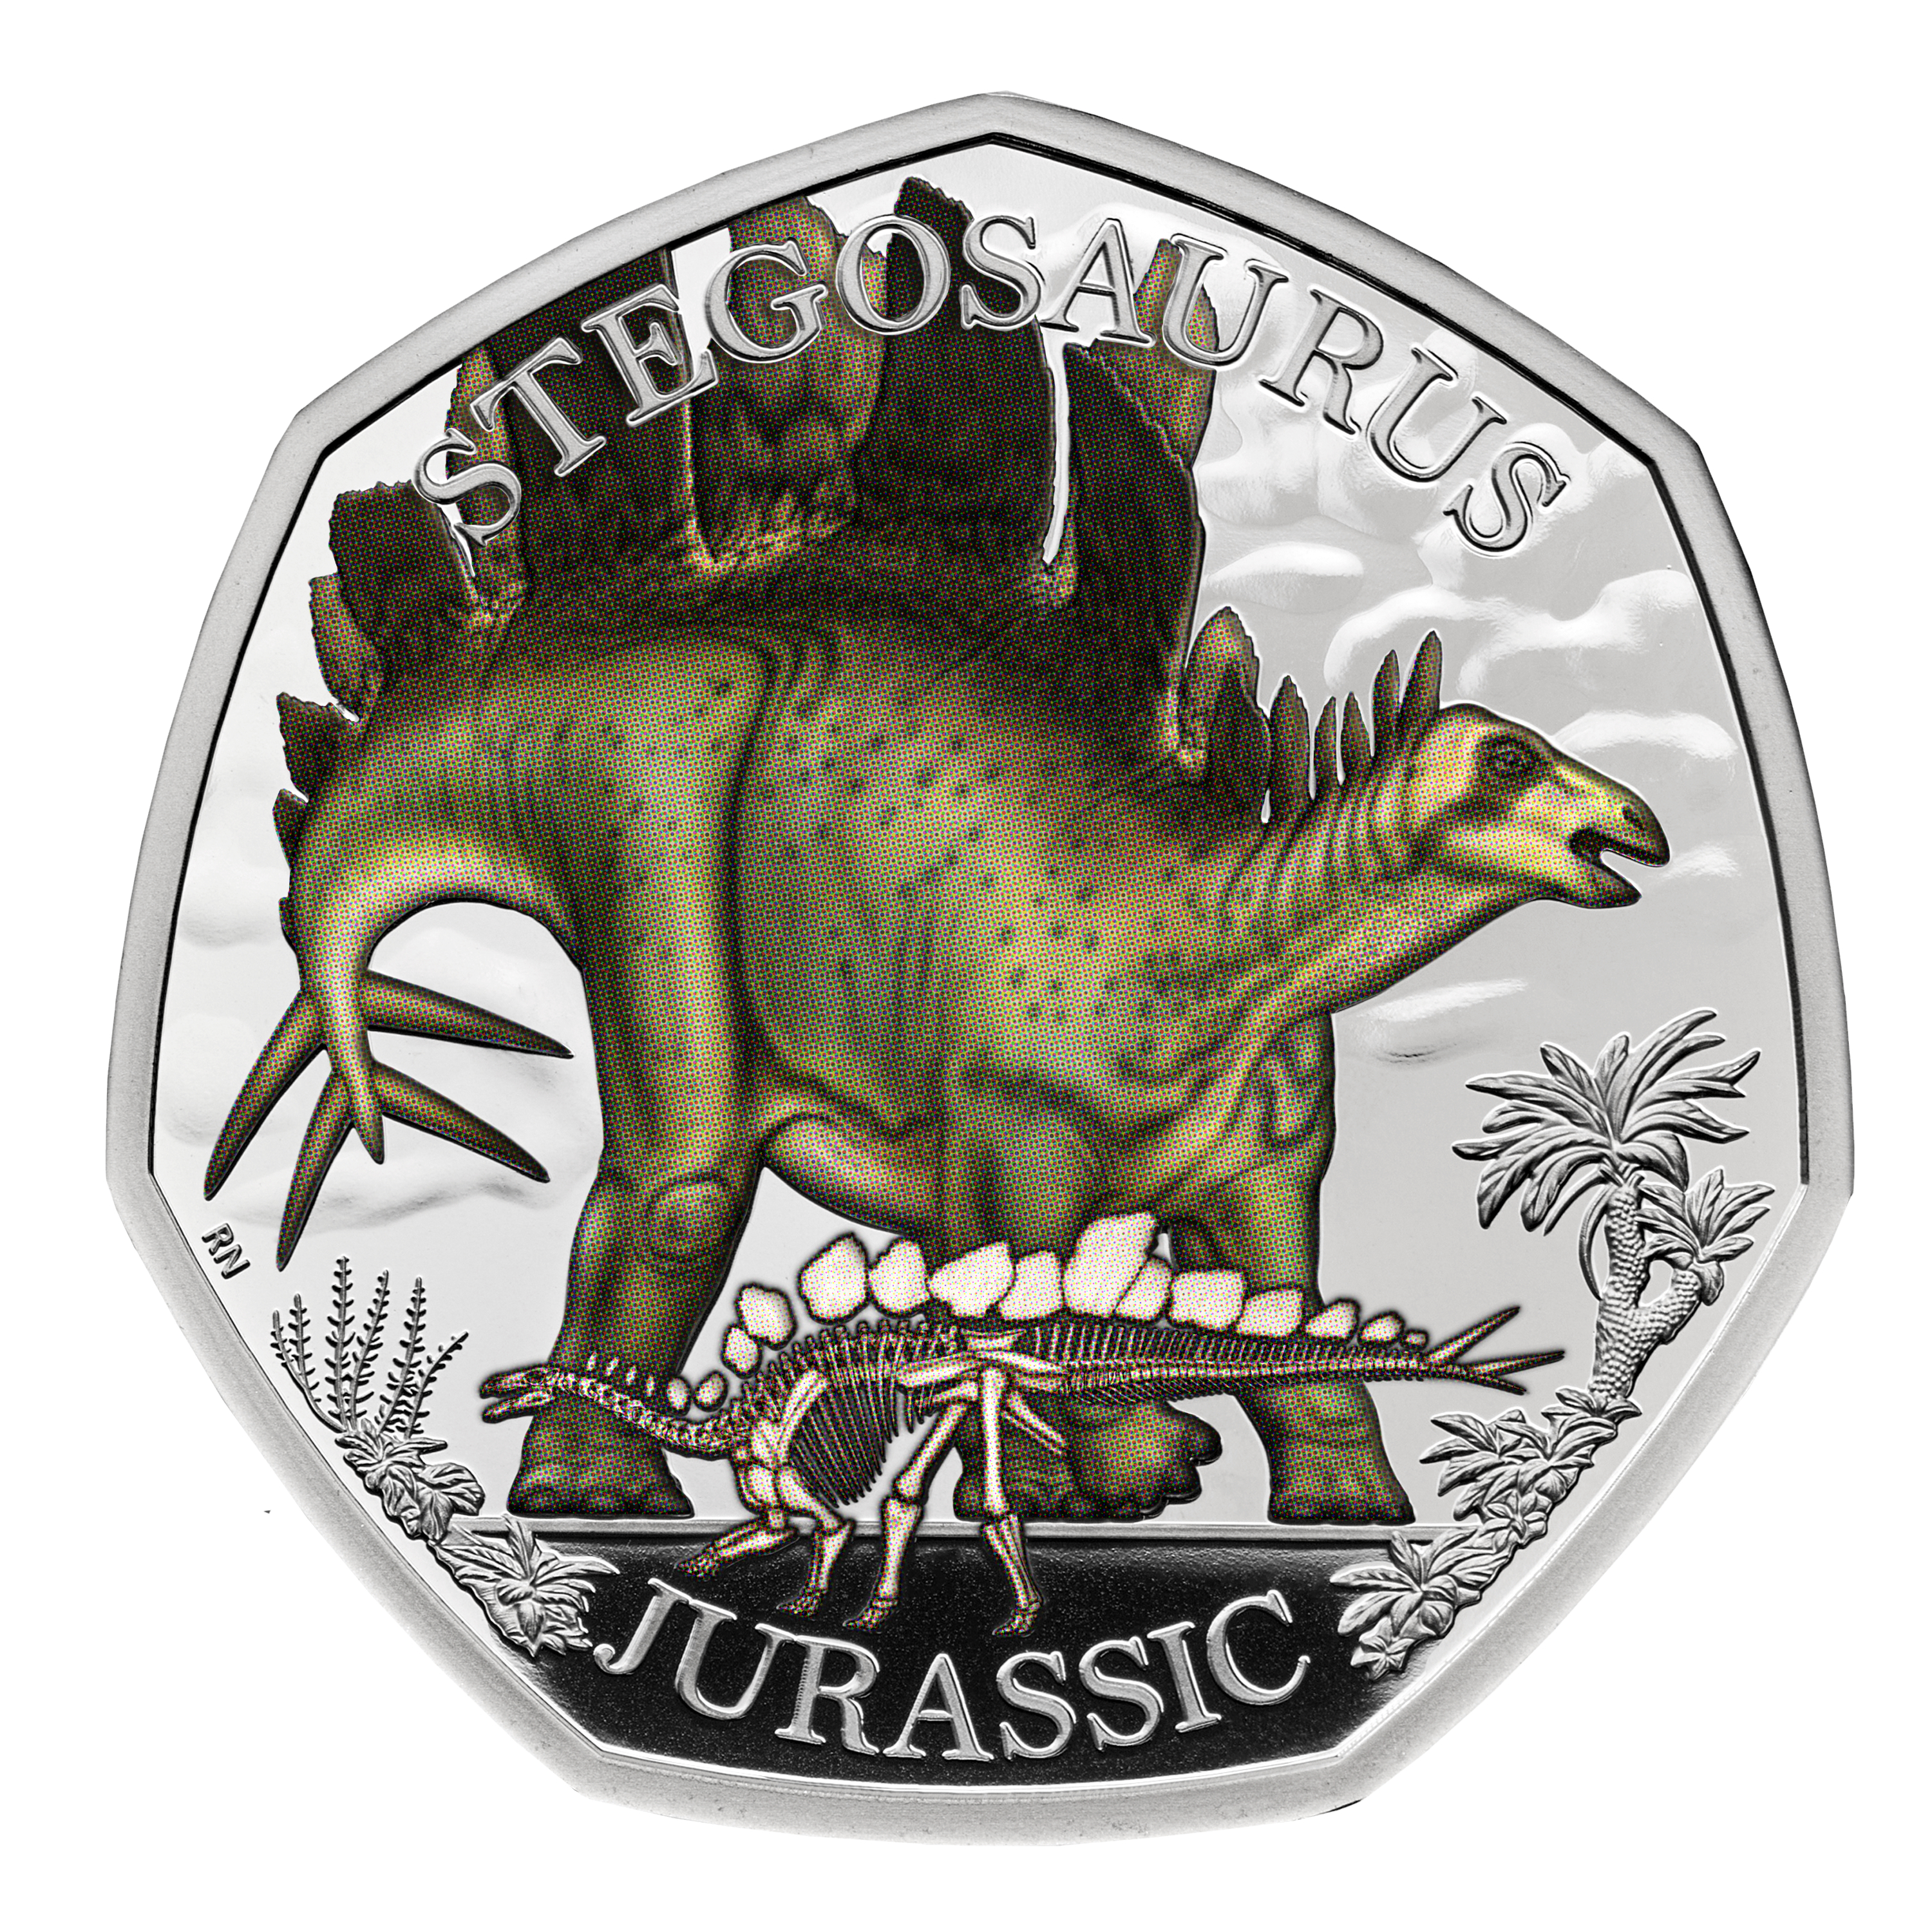 A stegosaurus coin